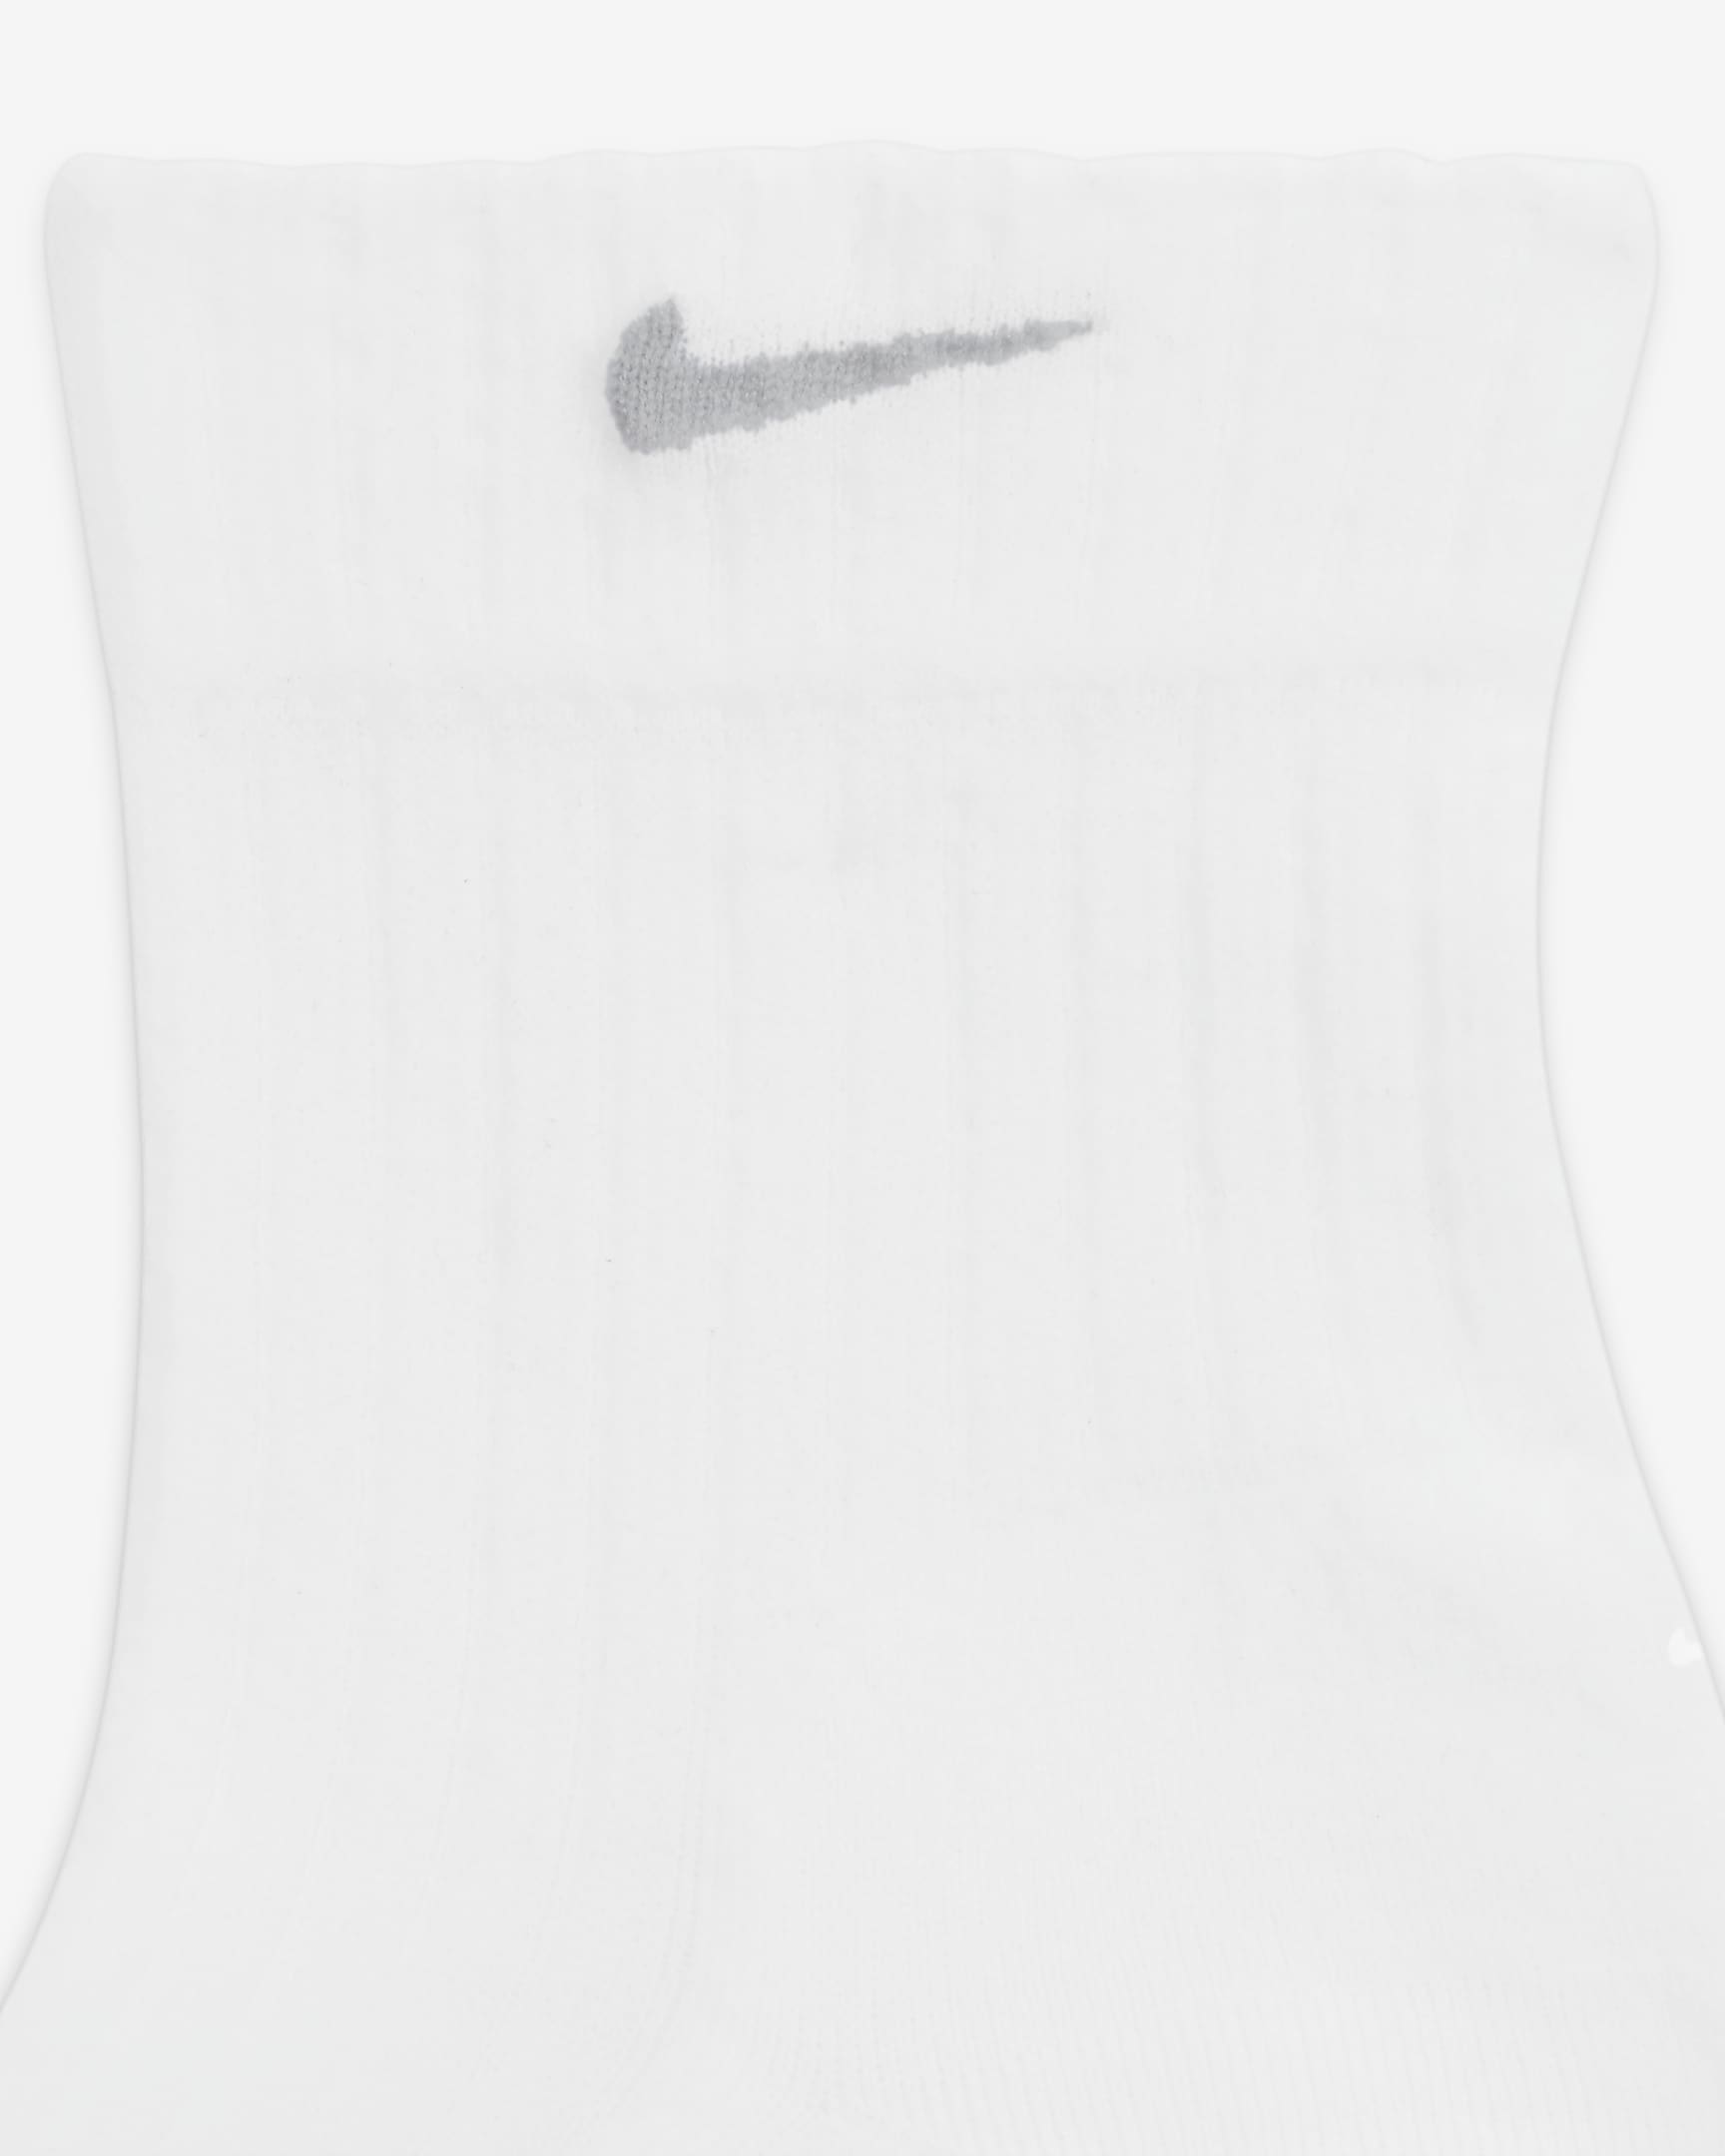 Nike Women's Sheer Ankle Socks (1 Pair) - White/Light Smoke Grey